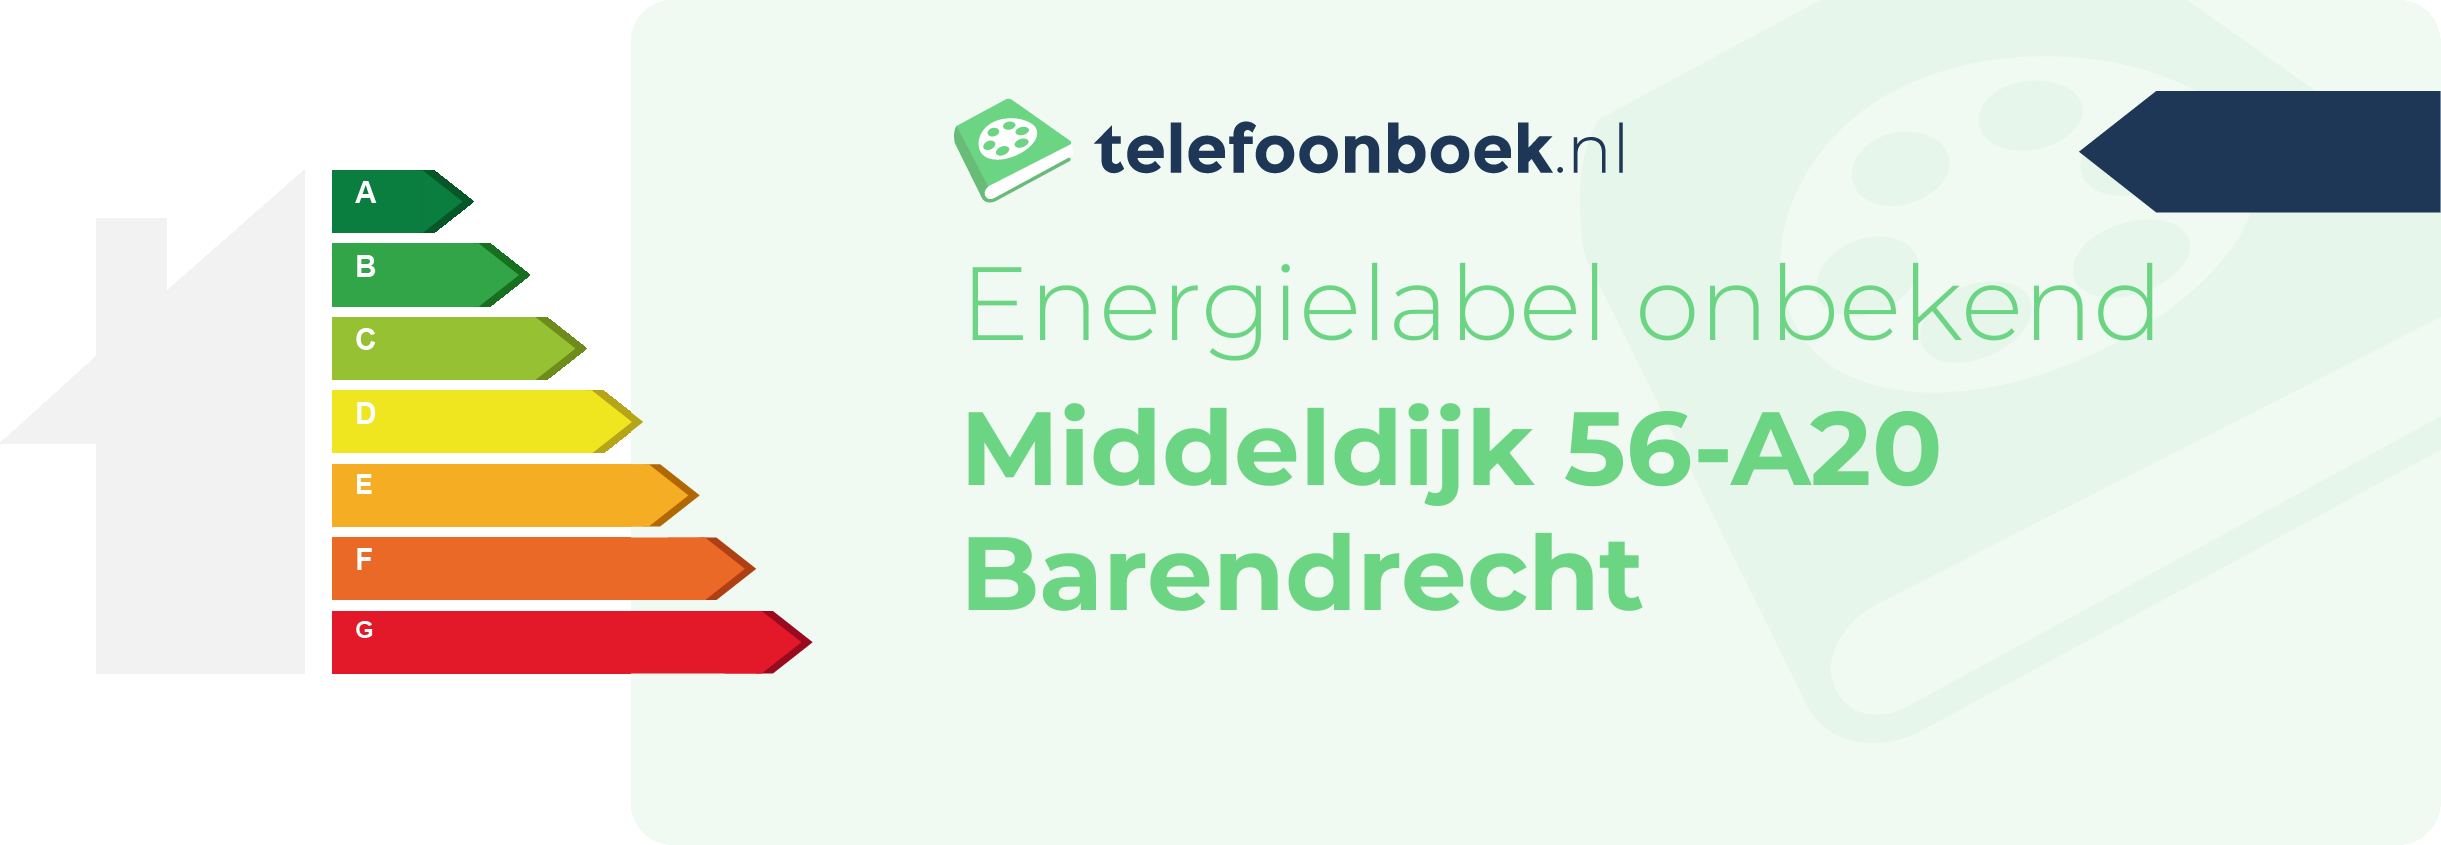 Energielabel Middeldijk 56-A20 Barendrecht